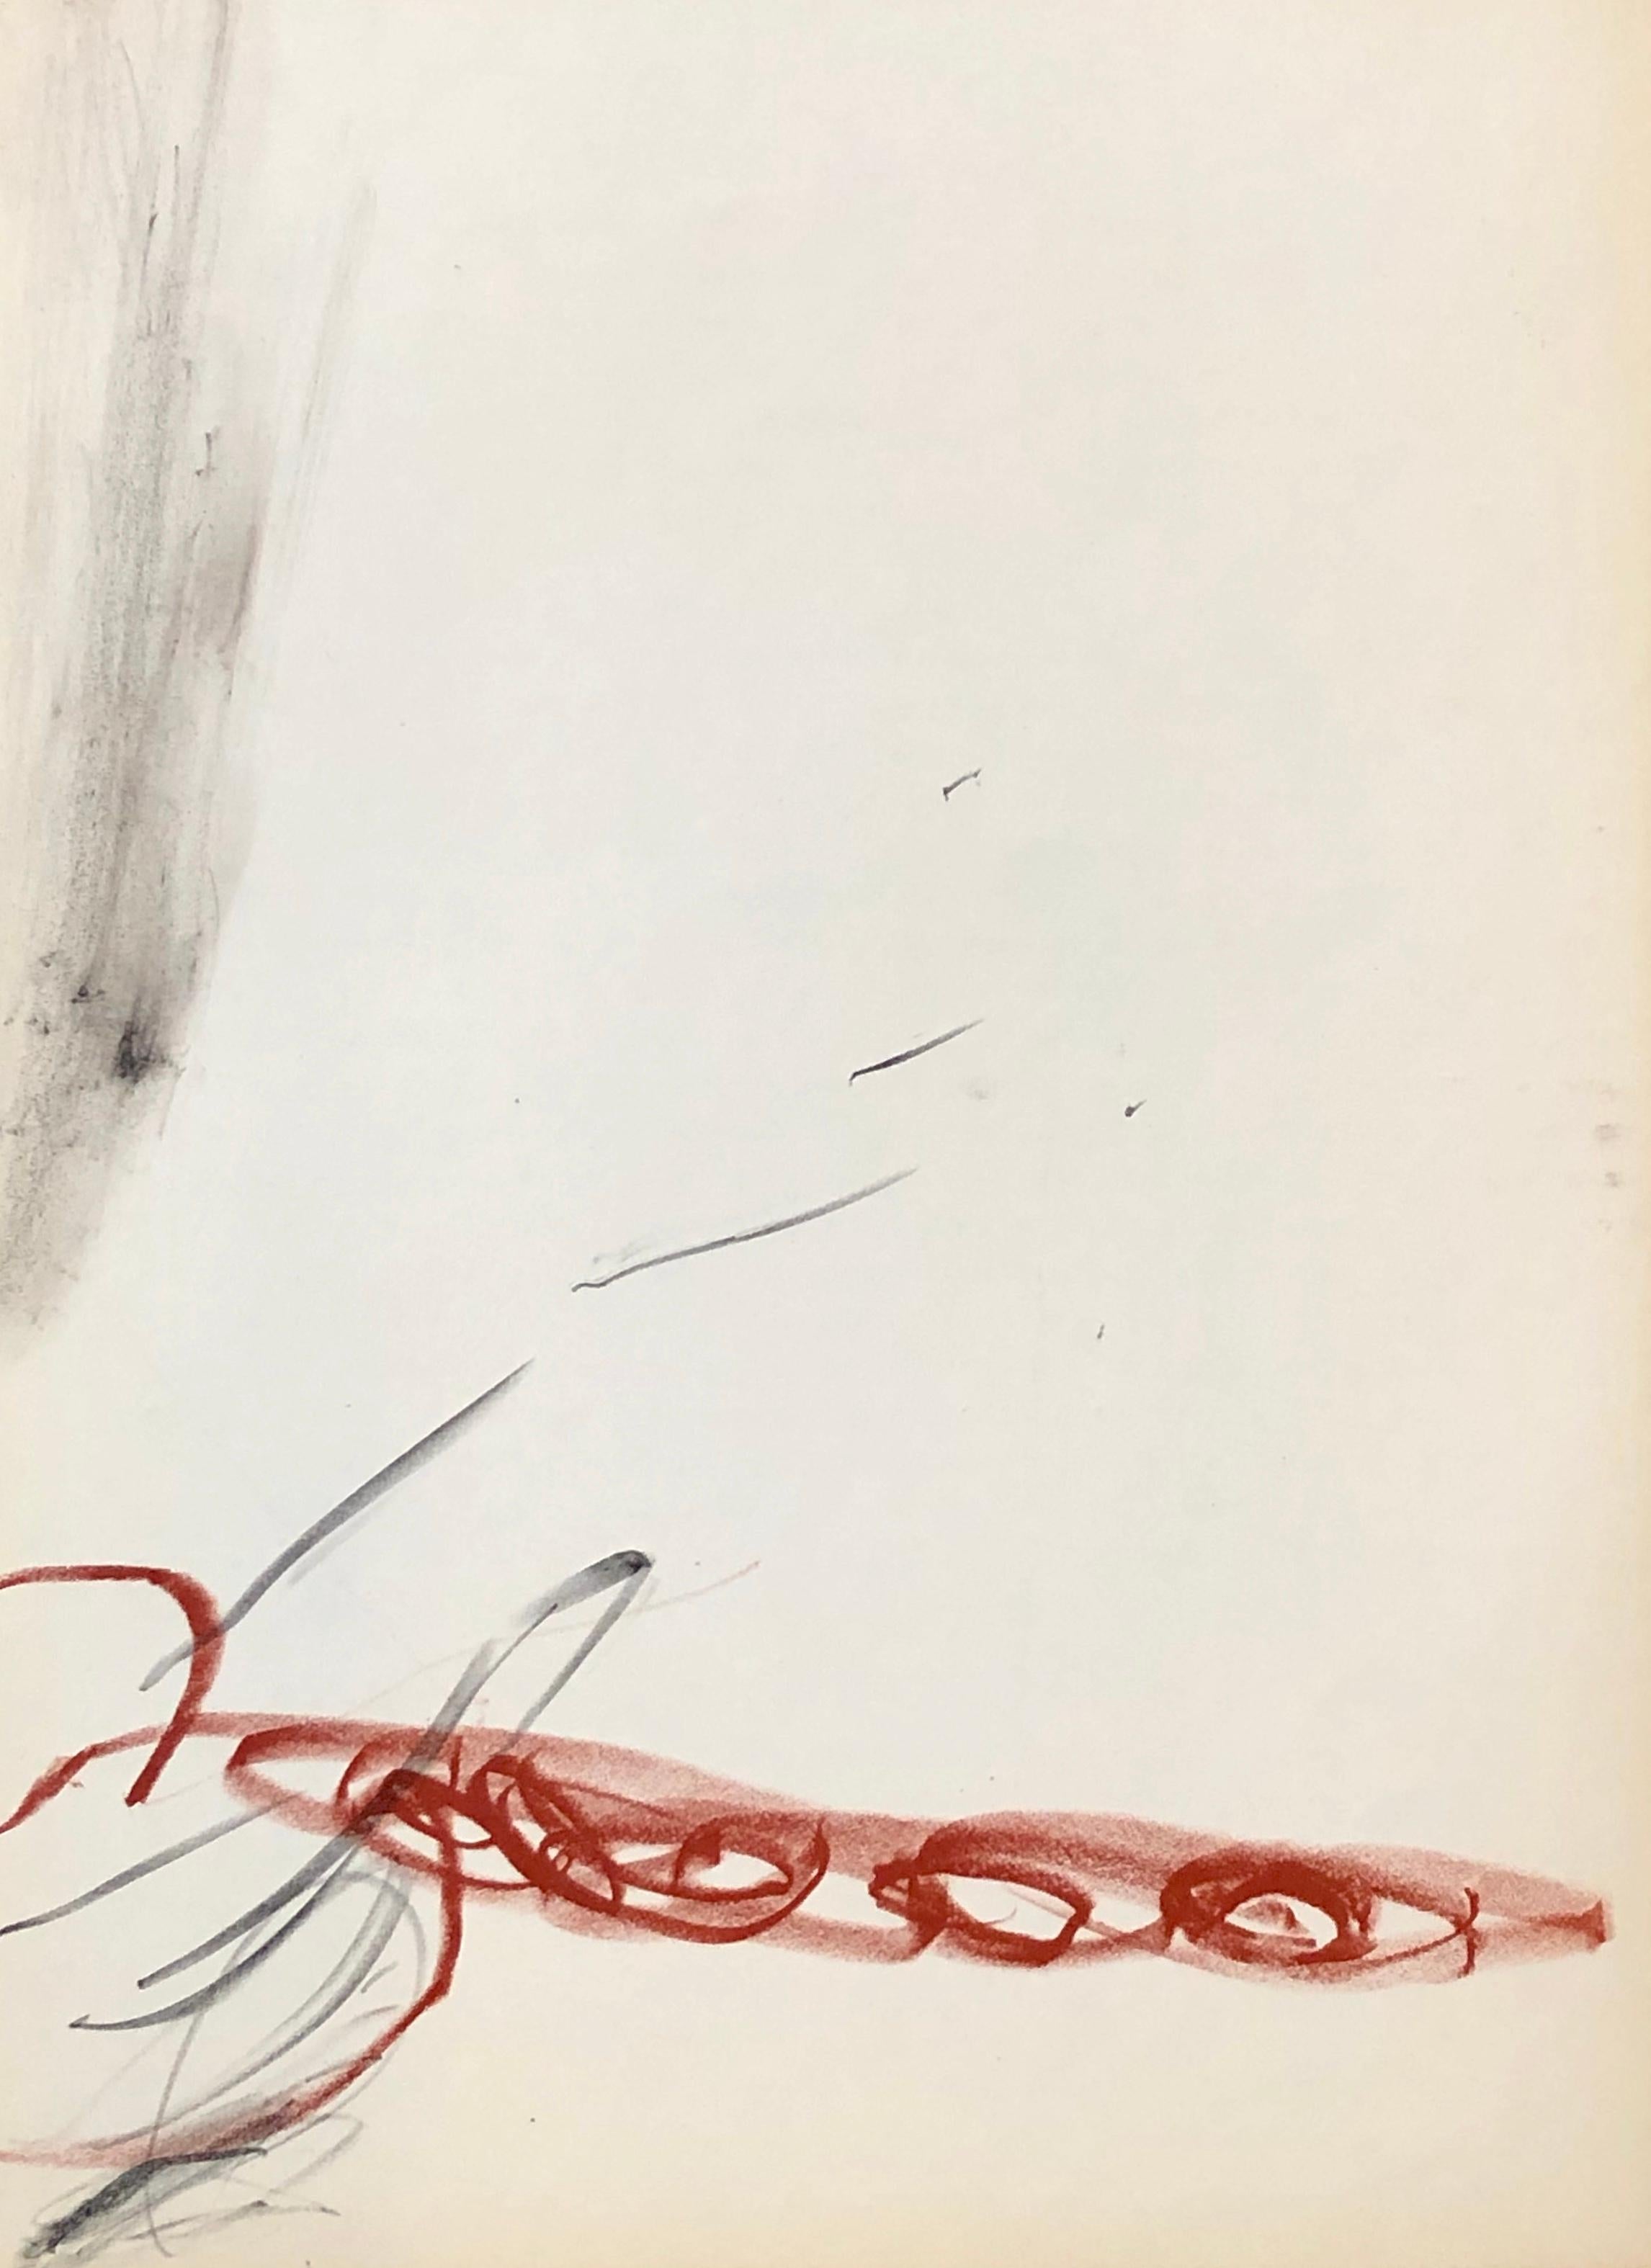 Antoni Tàpies Lithographie c. 1968 de Derrière le miroir :   

Lithographie en couleurs ; 15 x 11 pouces.  

Très bon état général vintage.

Non signé d'une édition d'inconnus. 

De : Derrière le miroir Imprimé en France vers 1967. Ils sont